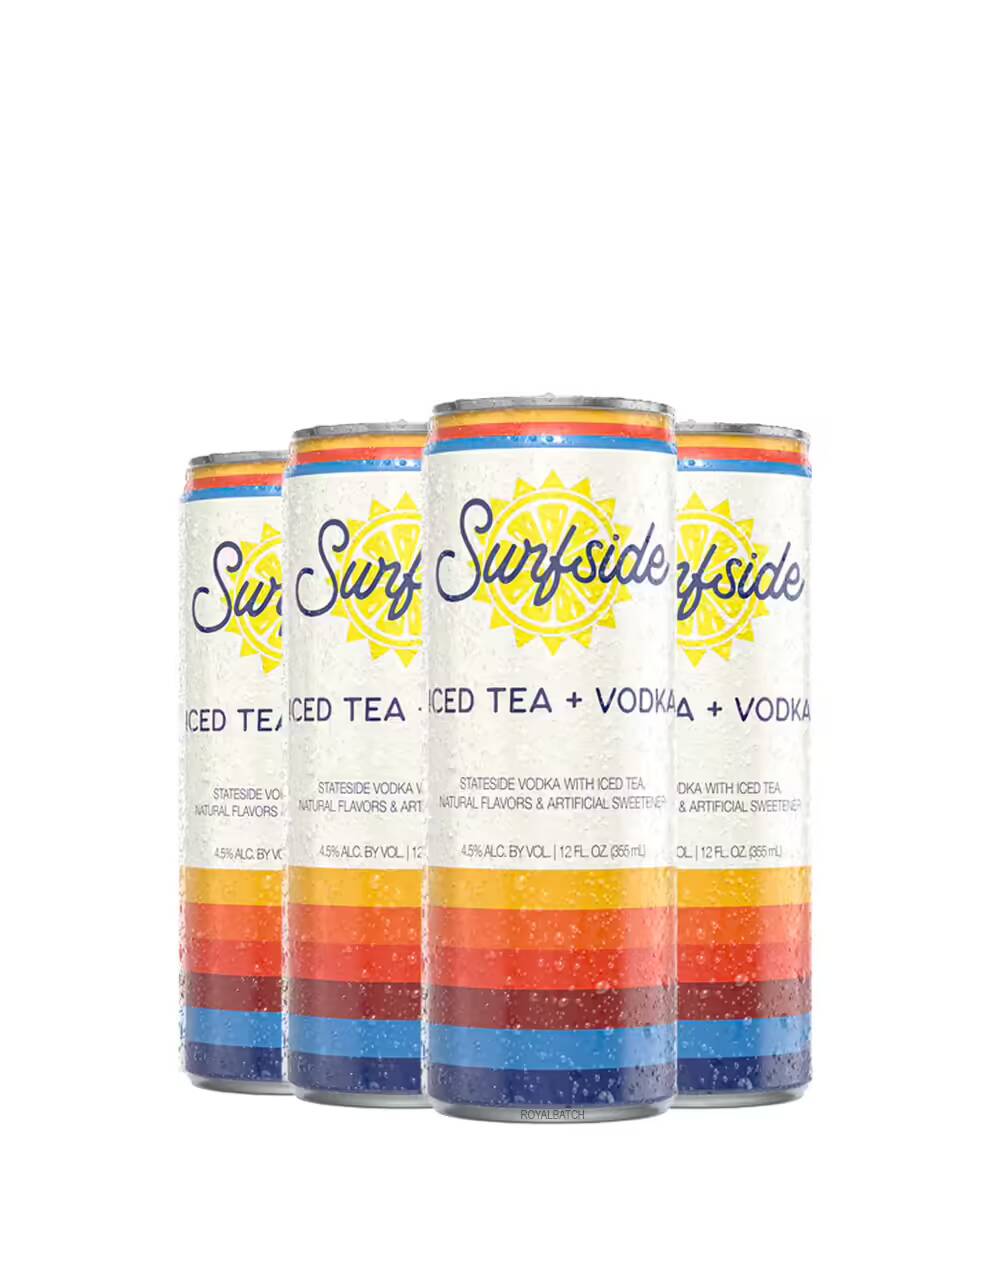 Surfside Iced Tea + Stateside Vodka (4 Pack) 355ml